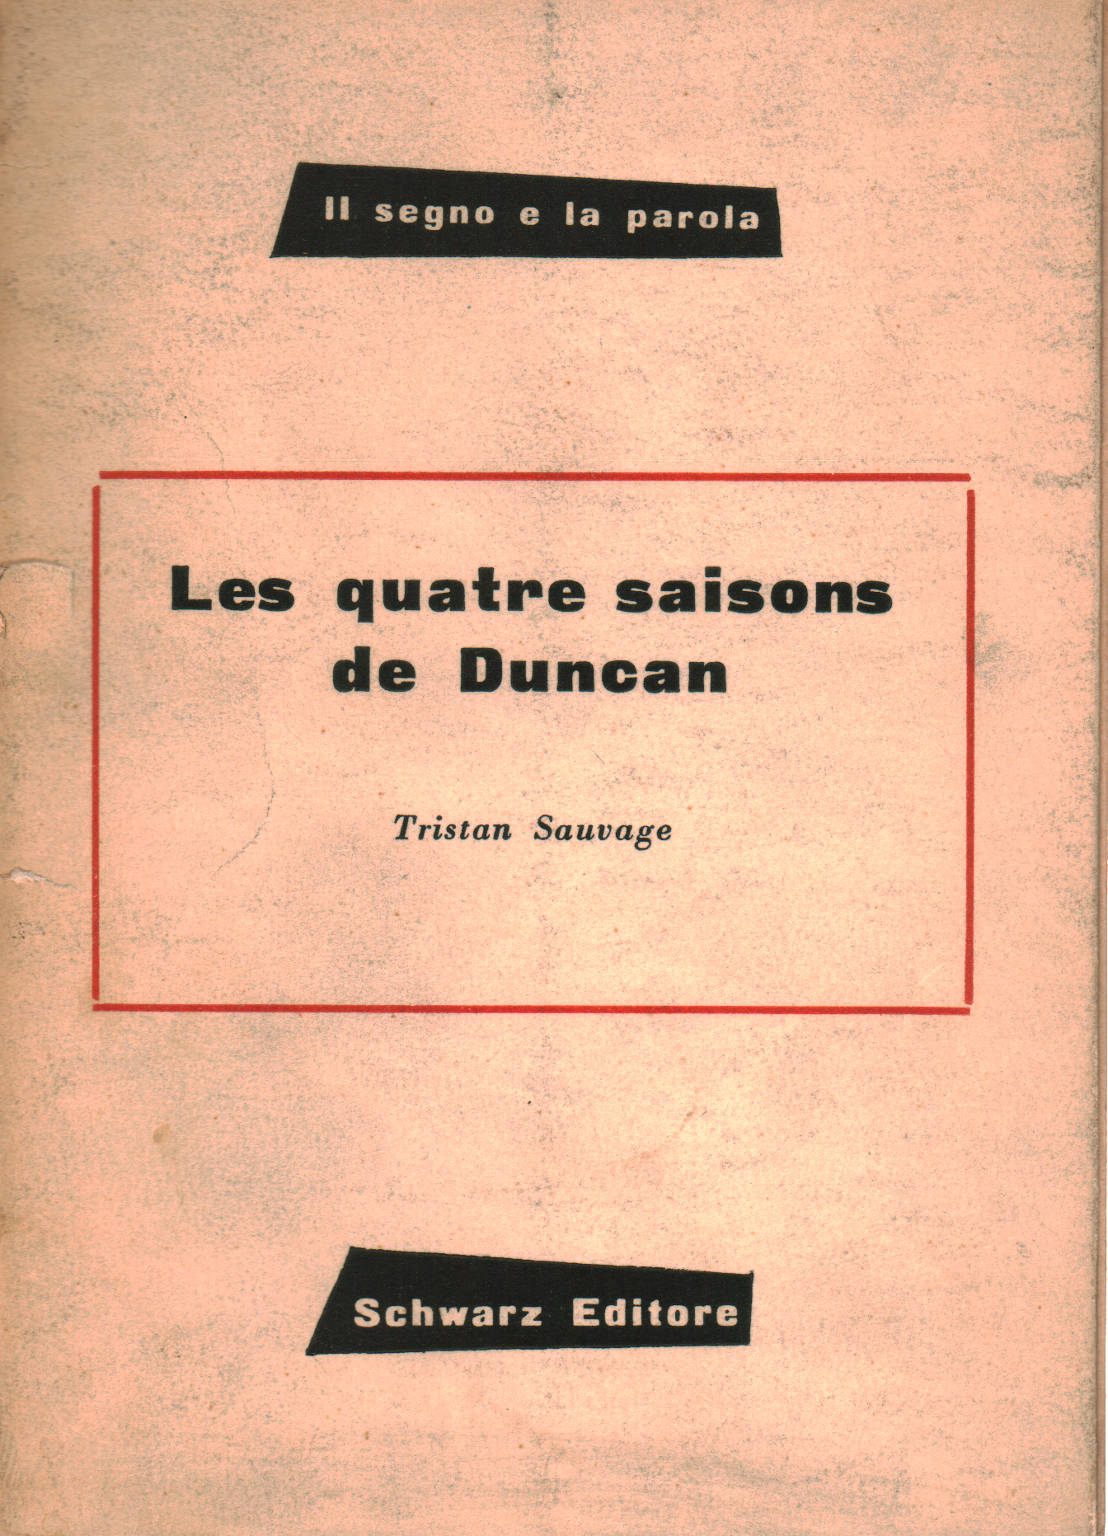 Le quattro stagioni di Duncan - Les quatre saisons, Tristan Sauvage